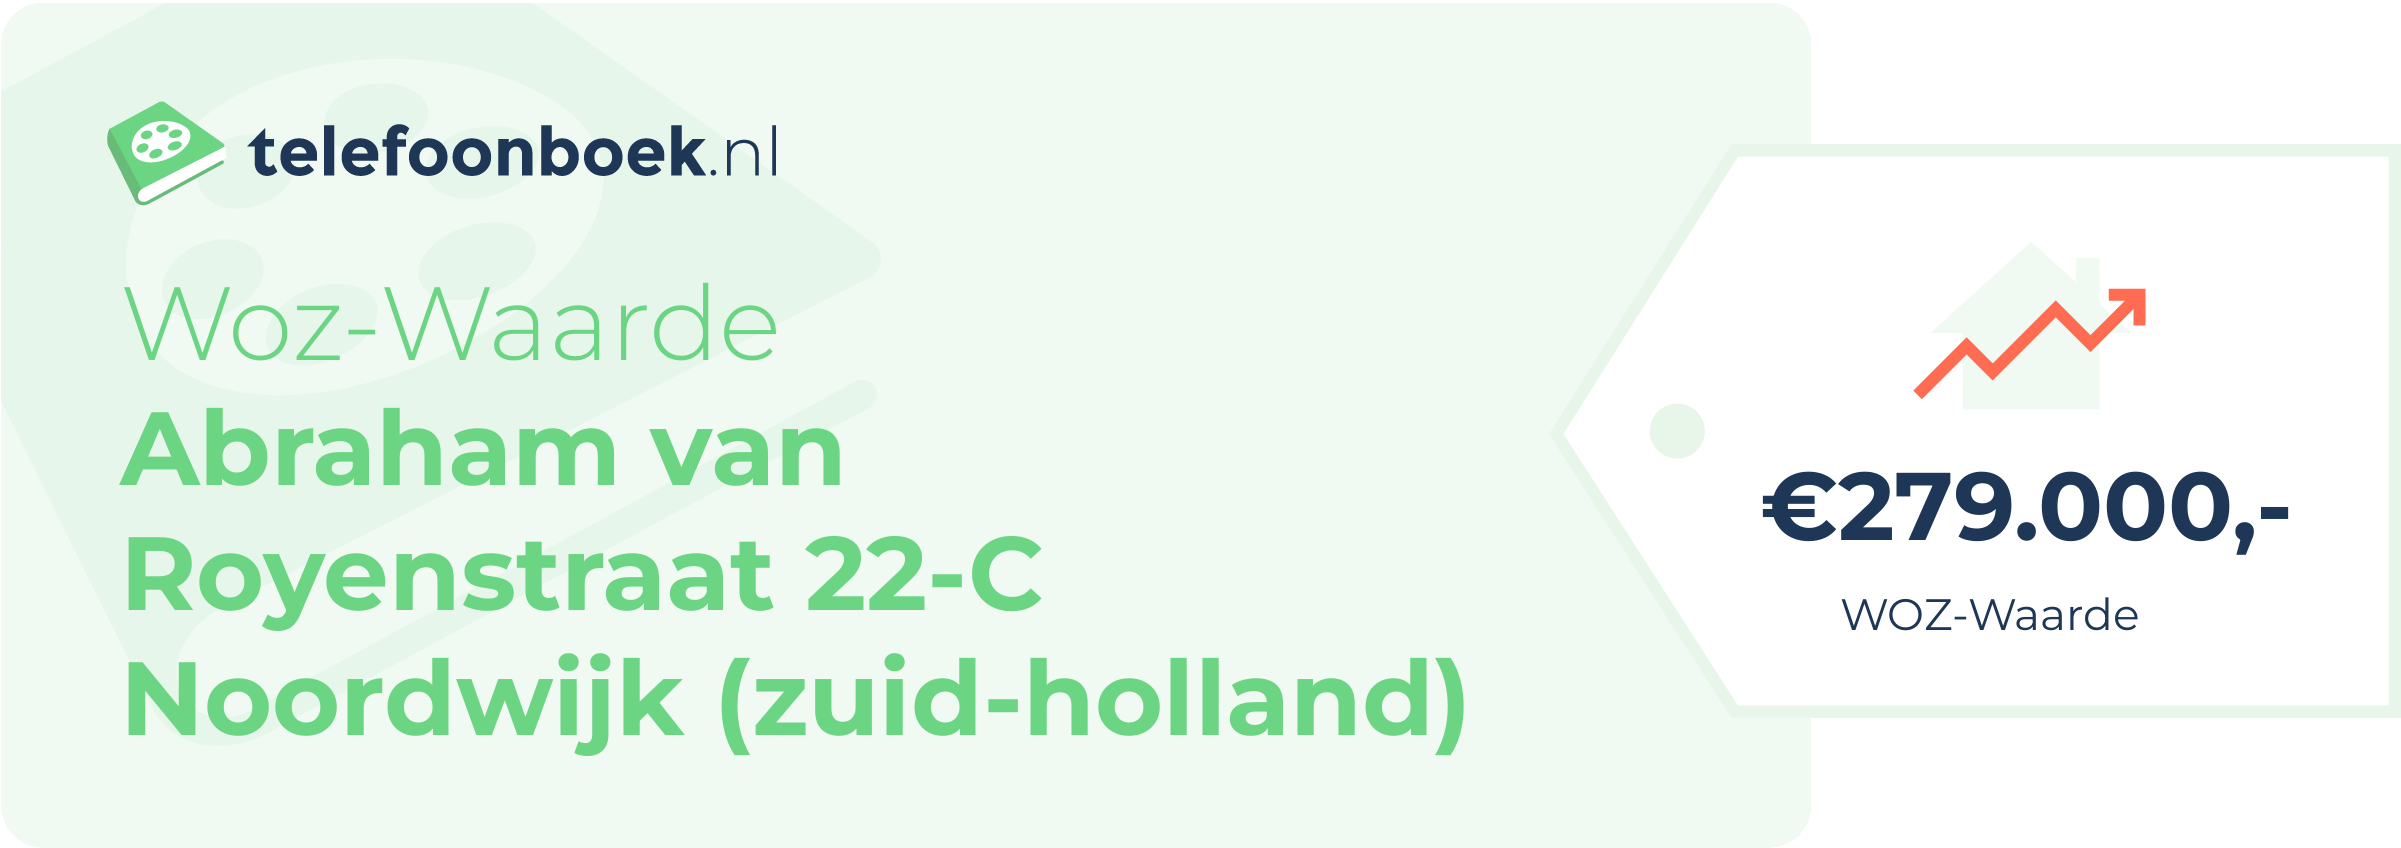 WOZ-waarde Abraham Van Royenstraat 22-C Noordwijk (Zuid-Holland)